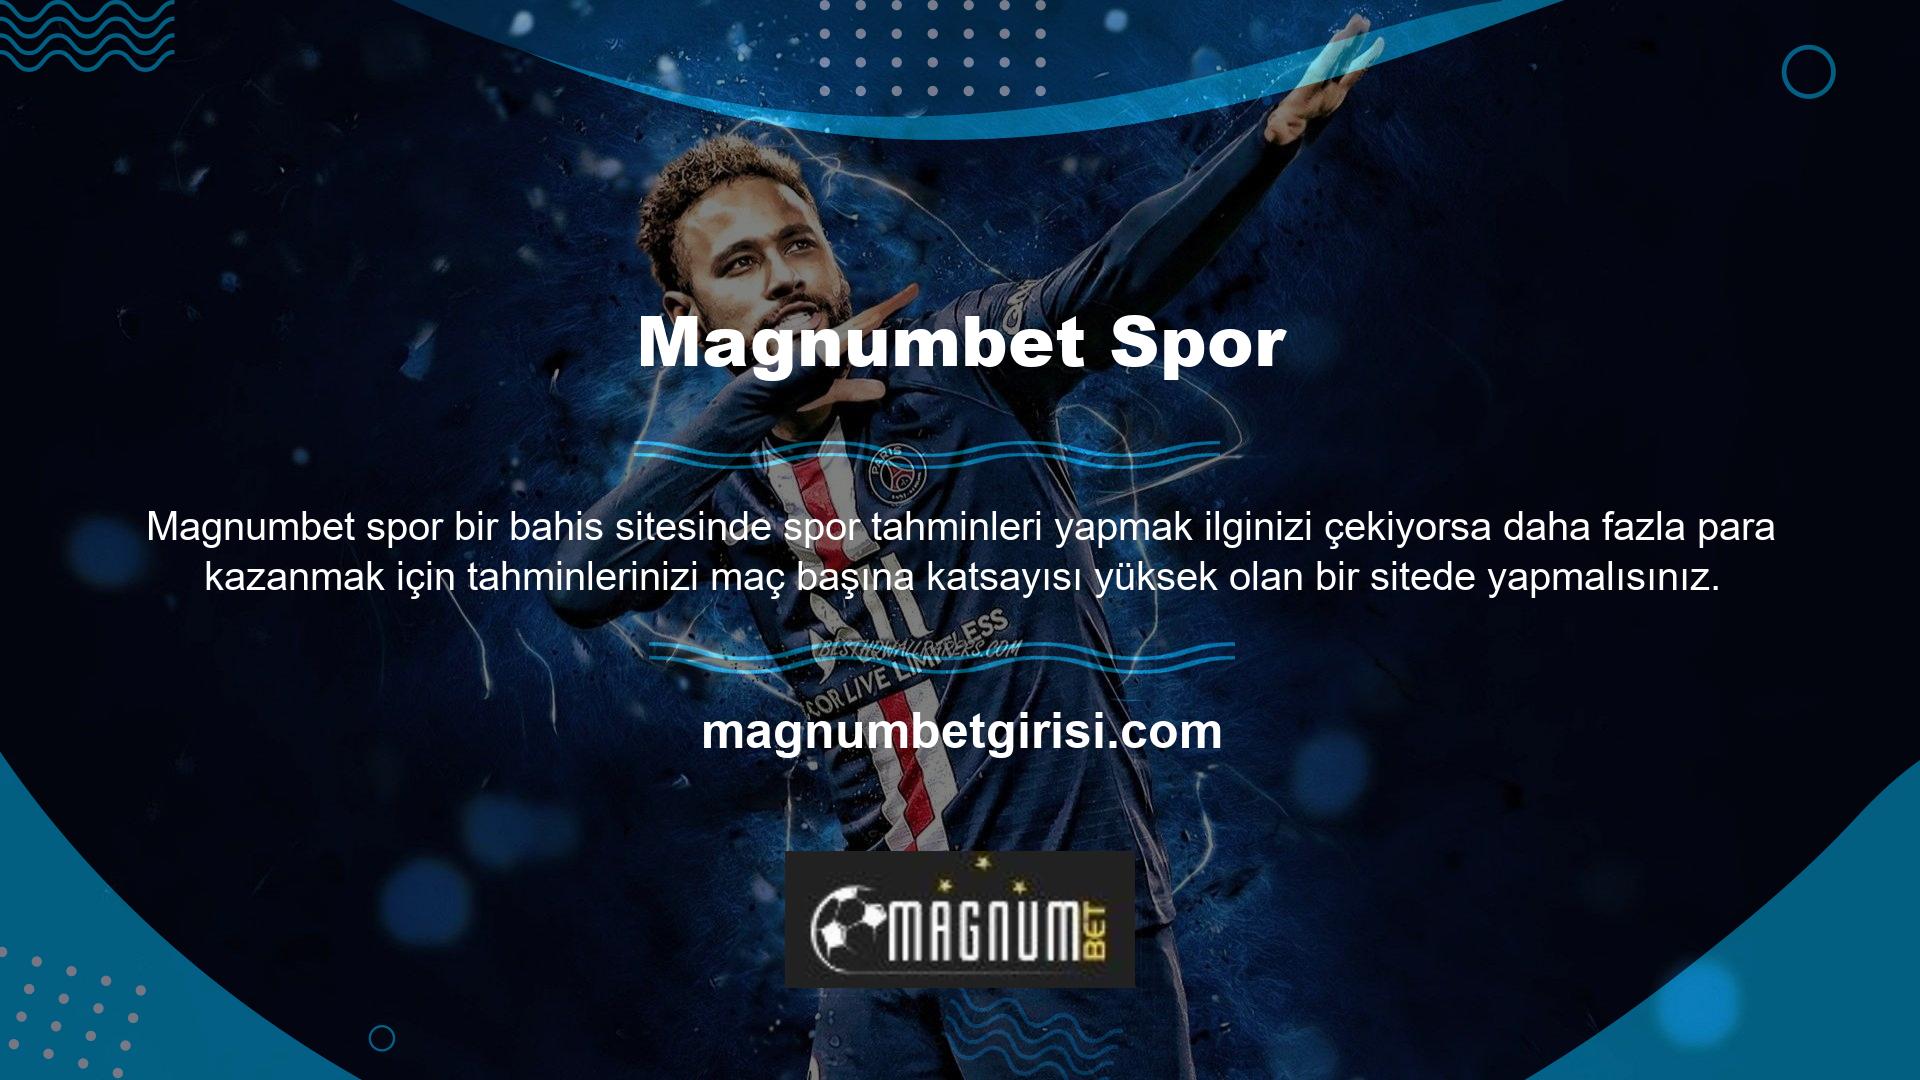 Magnumbet, kullanıcılarına yüksek oranlı spor tahminleri sunan en saygın bahis sitelerinden biridir